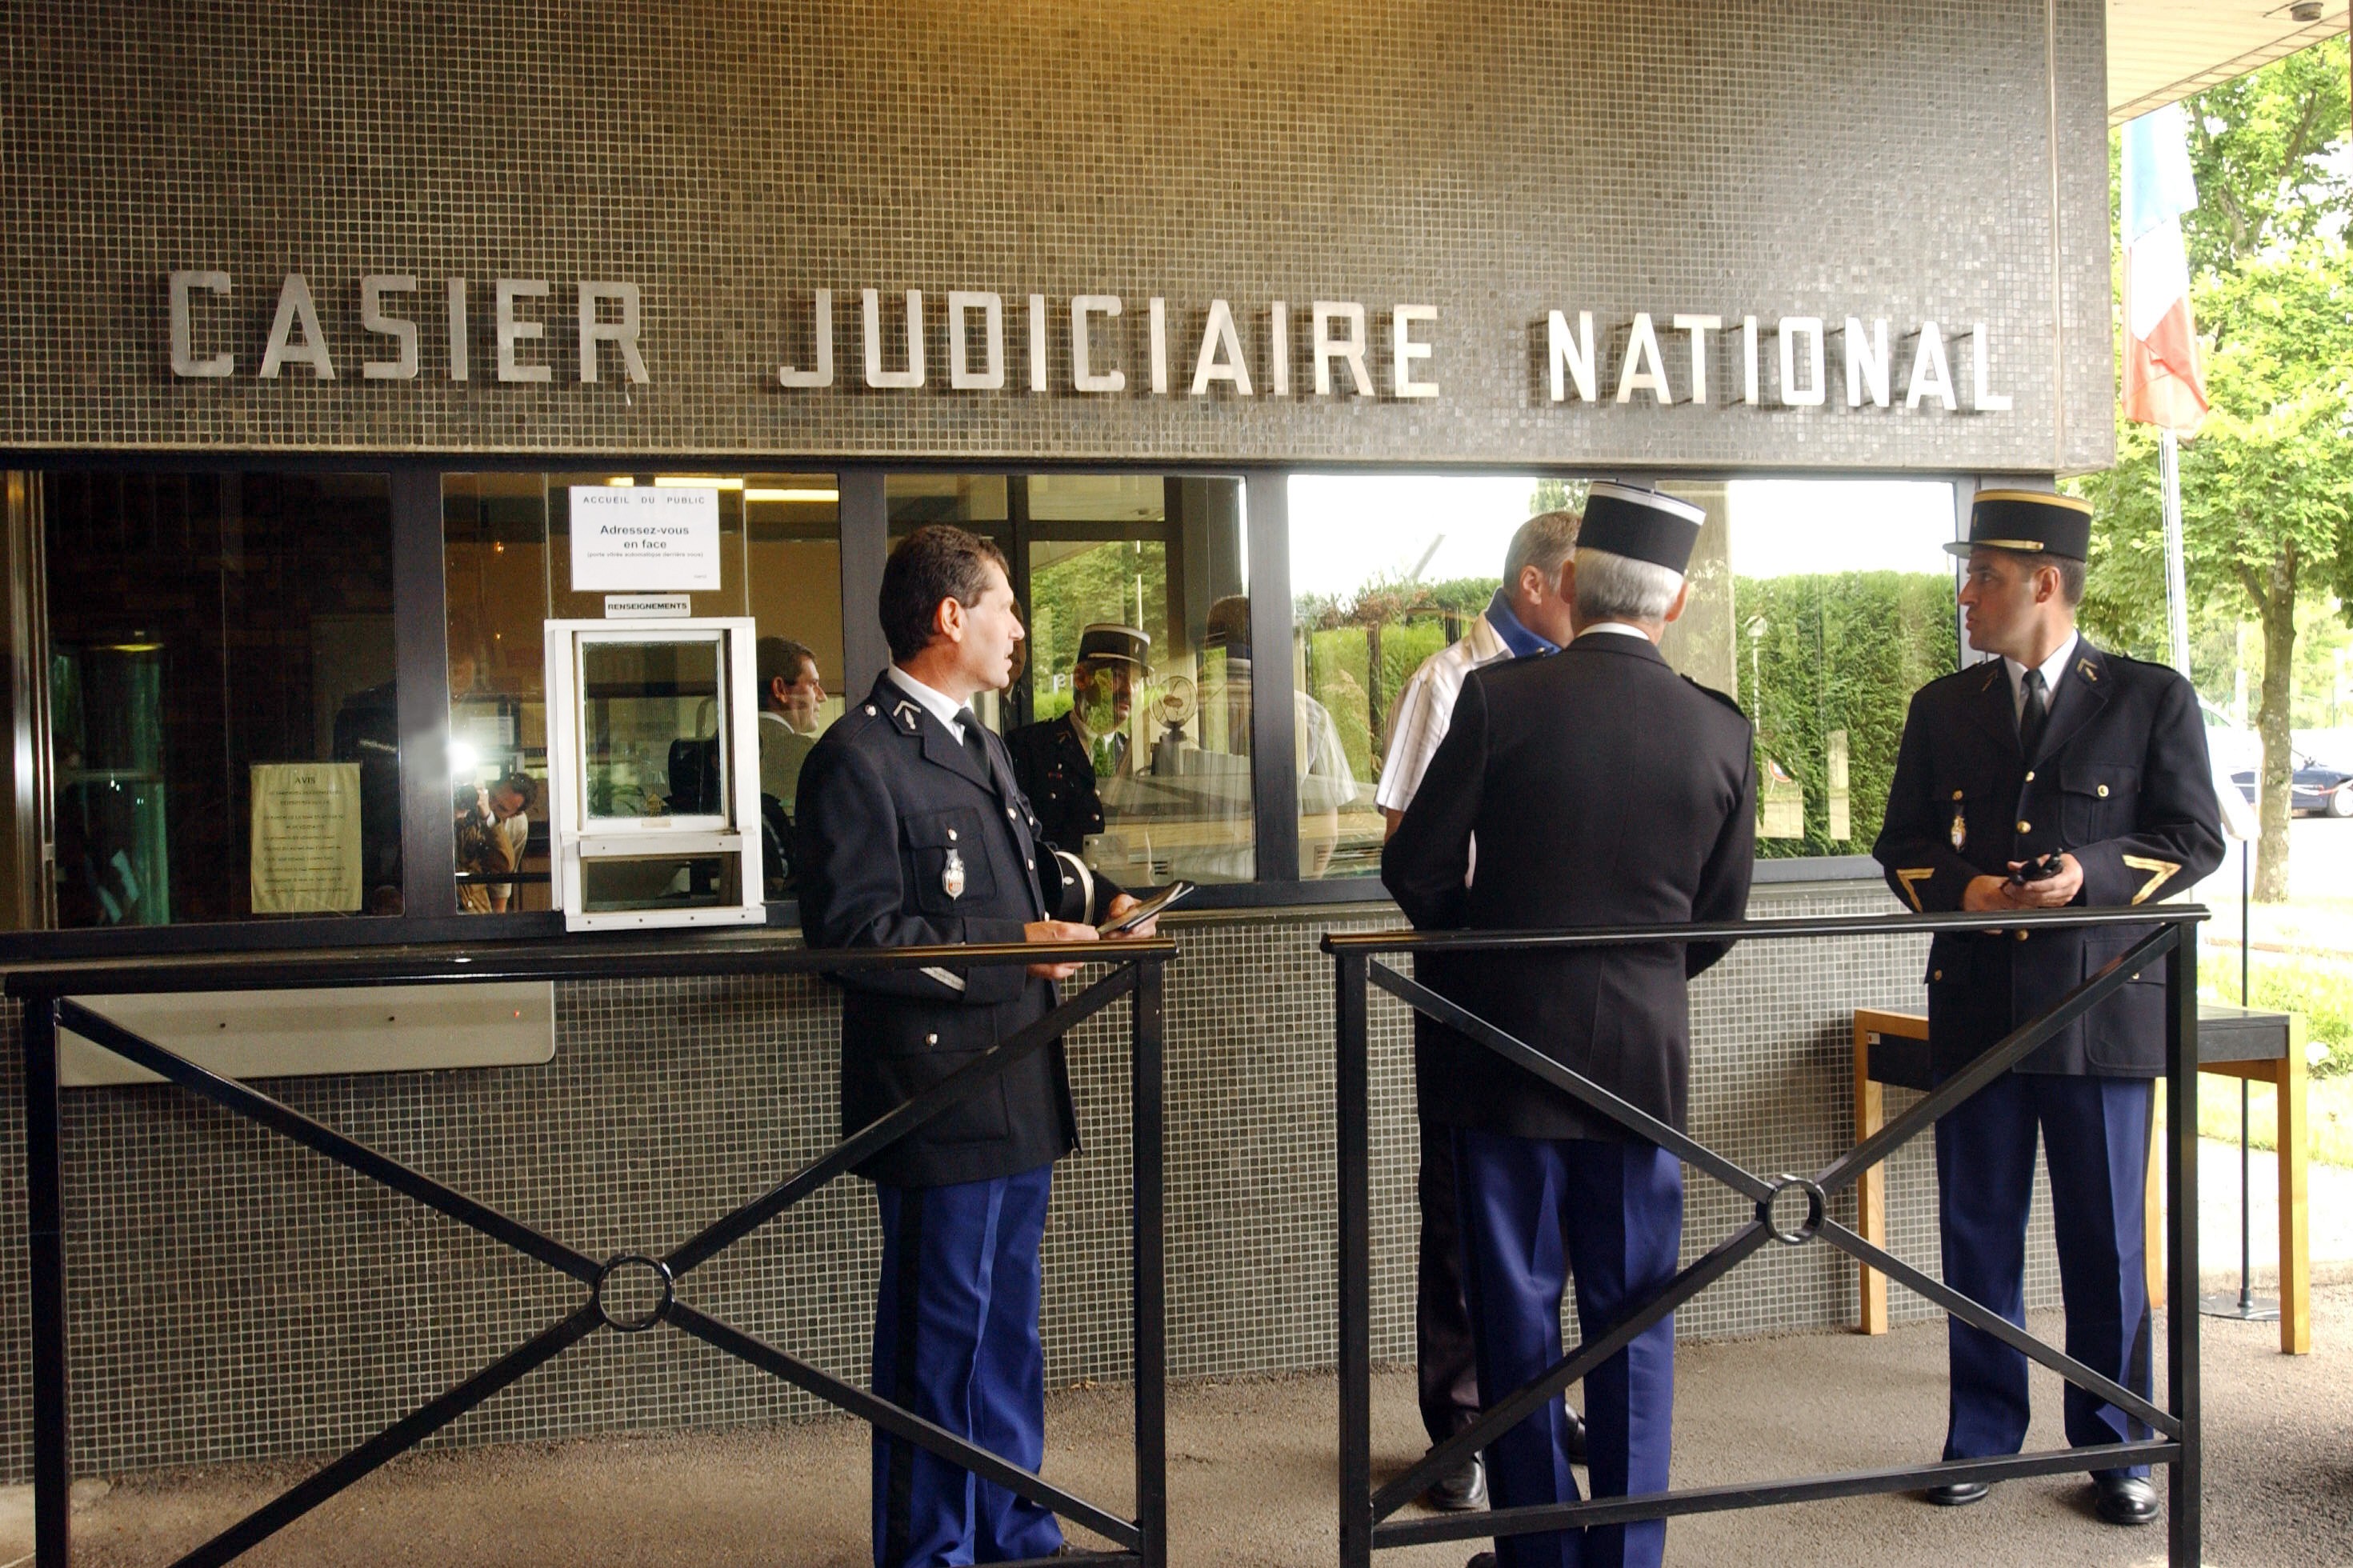 7777130731_des-gendarmes-devant-le-casier-judiciaire-national-a-nantes-en-2005-illustration